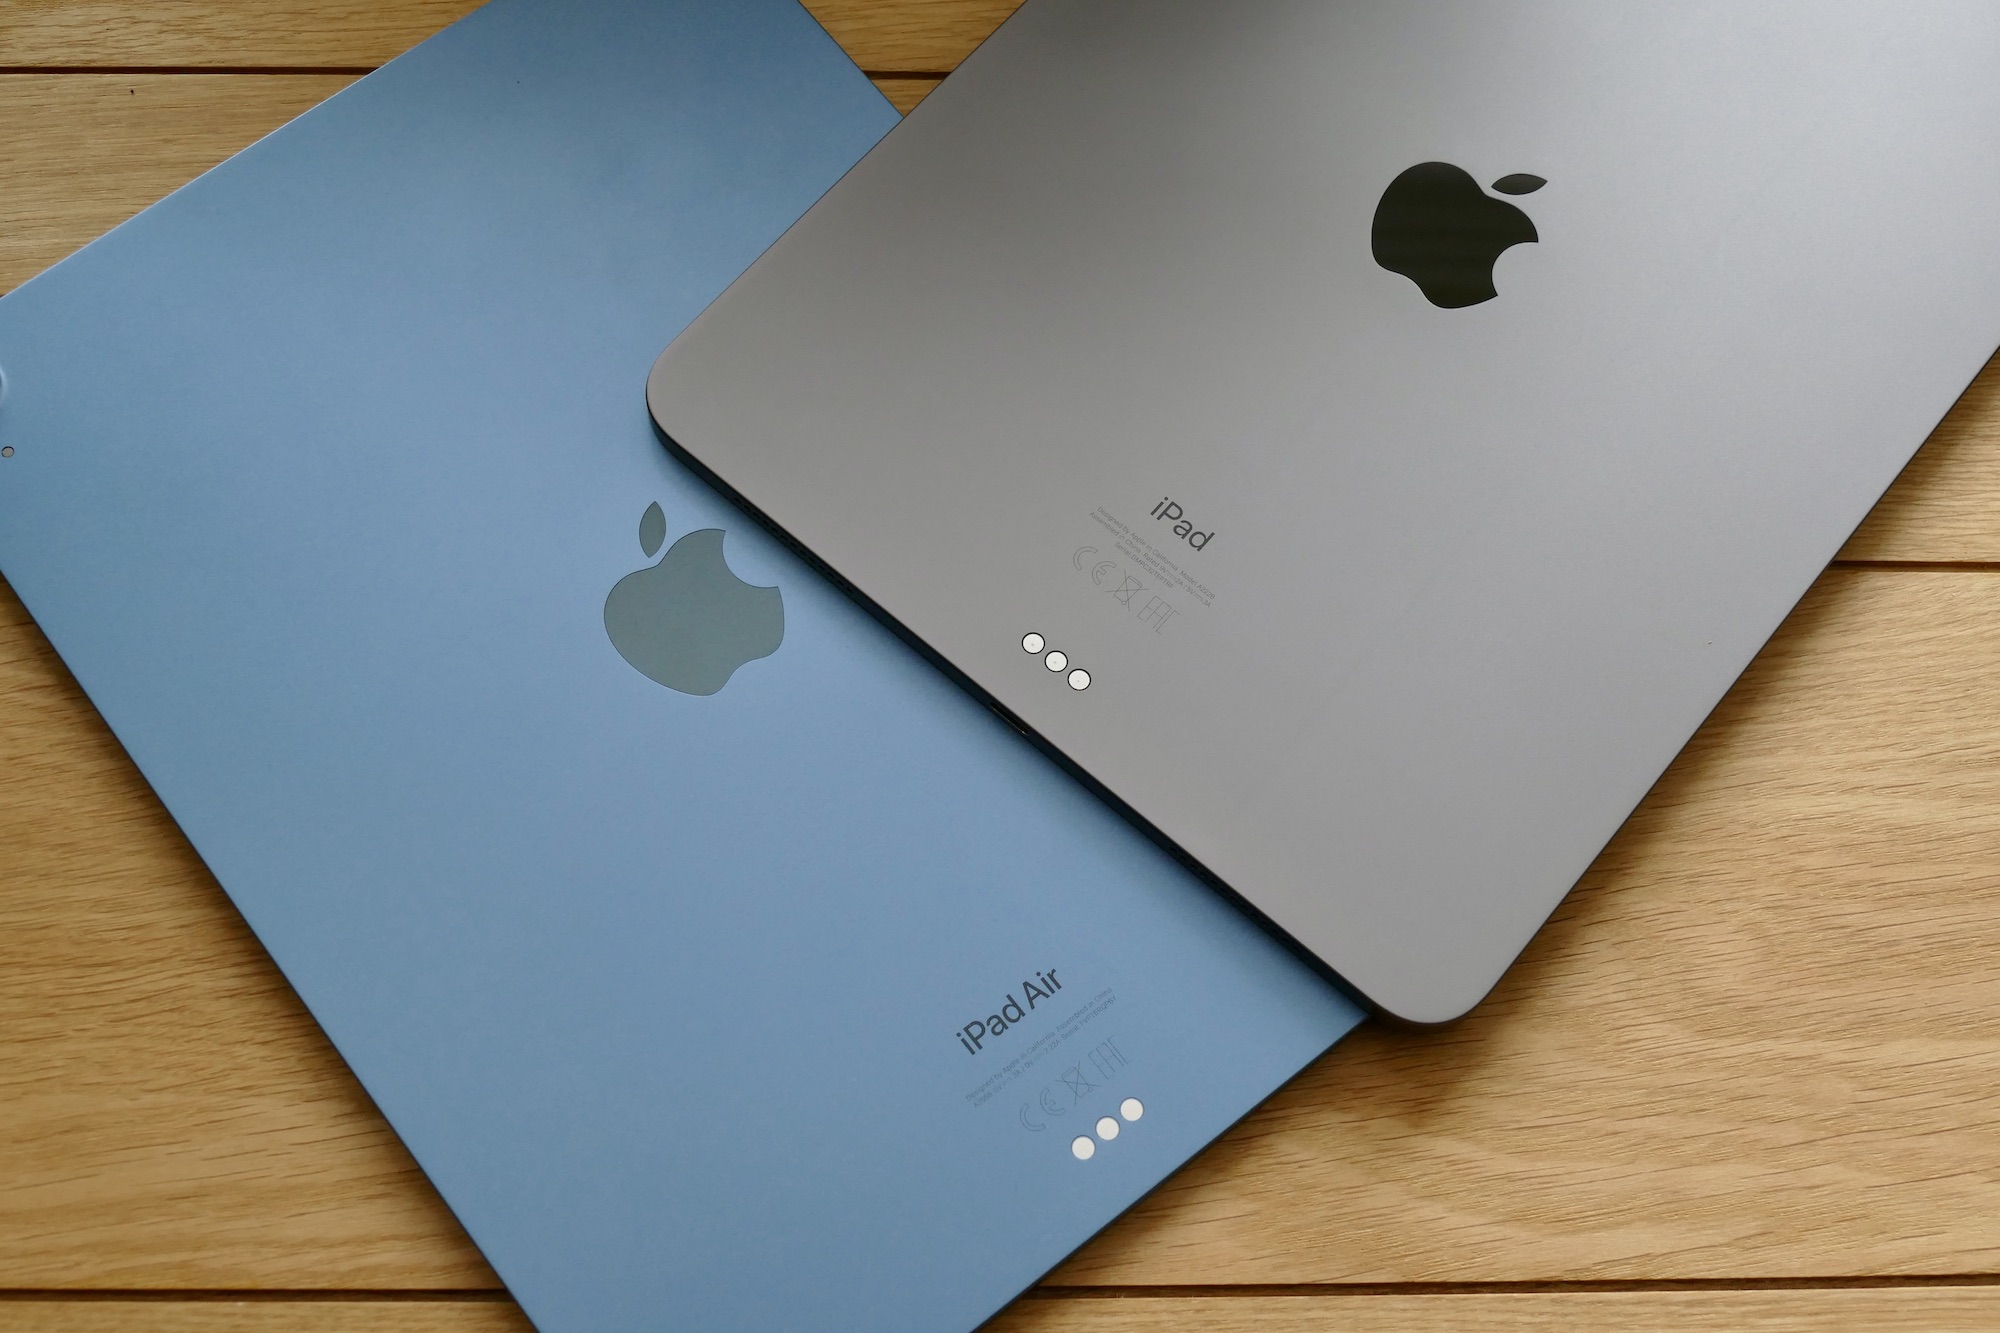 Задние стороны iPad Air и iPad Pro от Apple, расположенные на столе.